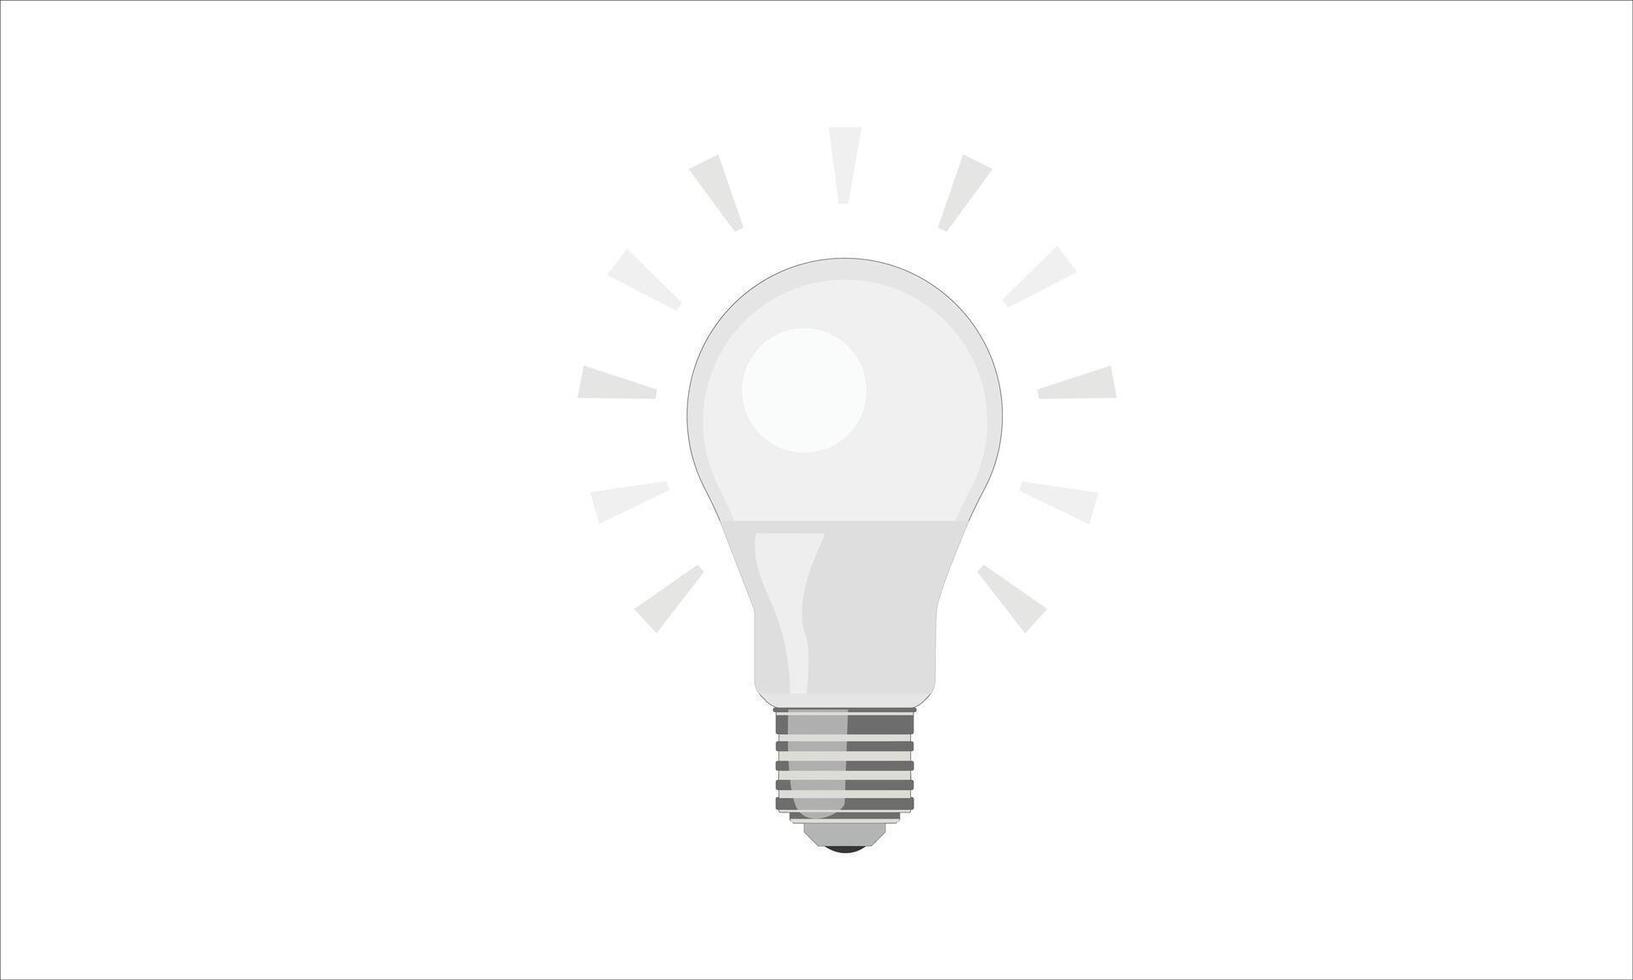 LED White light bulb icon on white vector